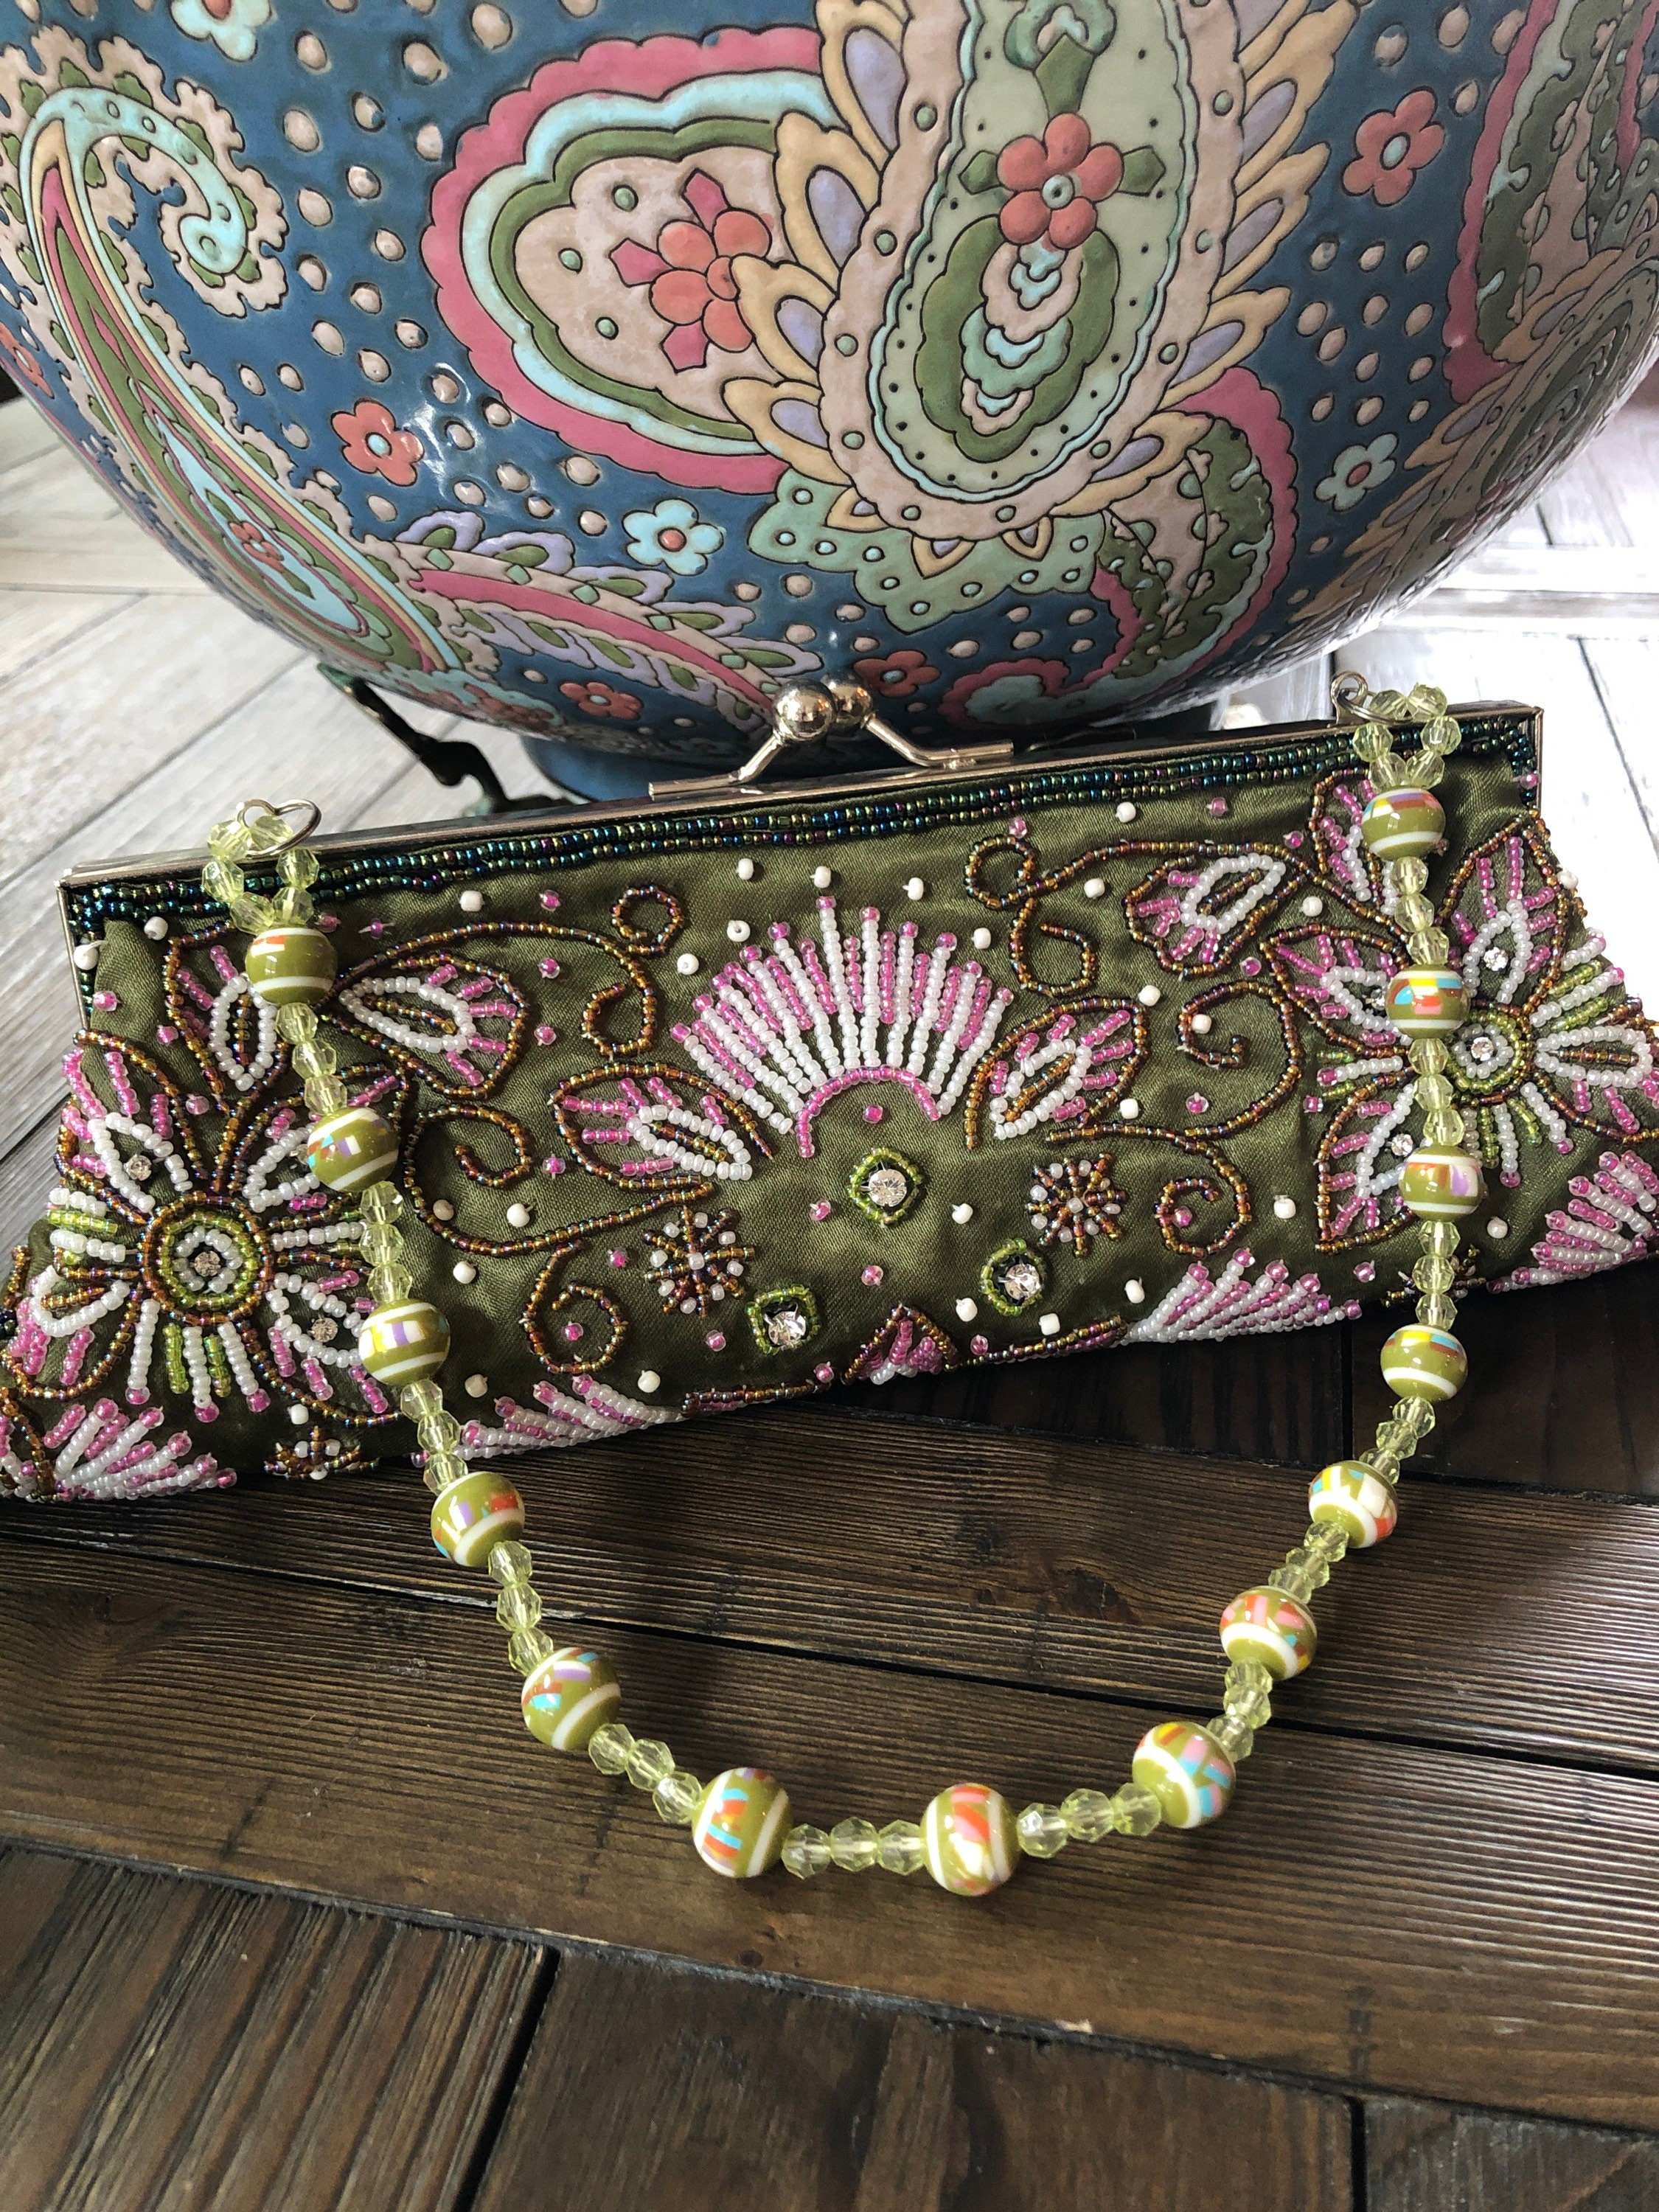 Alma Tonutti Italian Tan/silver Metallic Woven Handbag With 